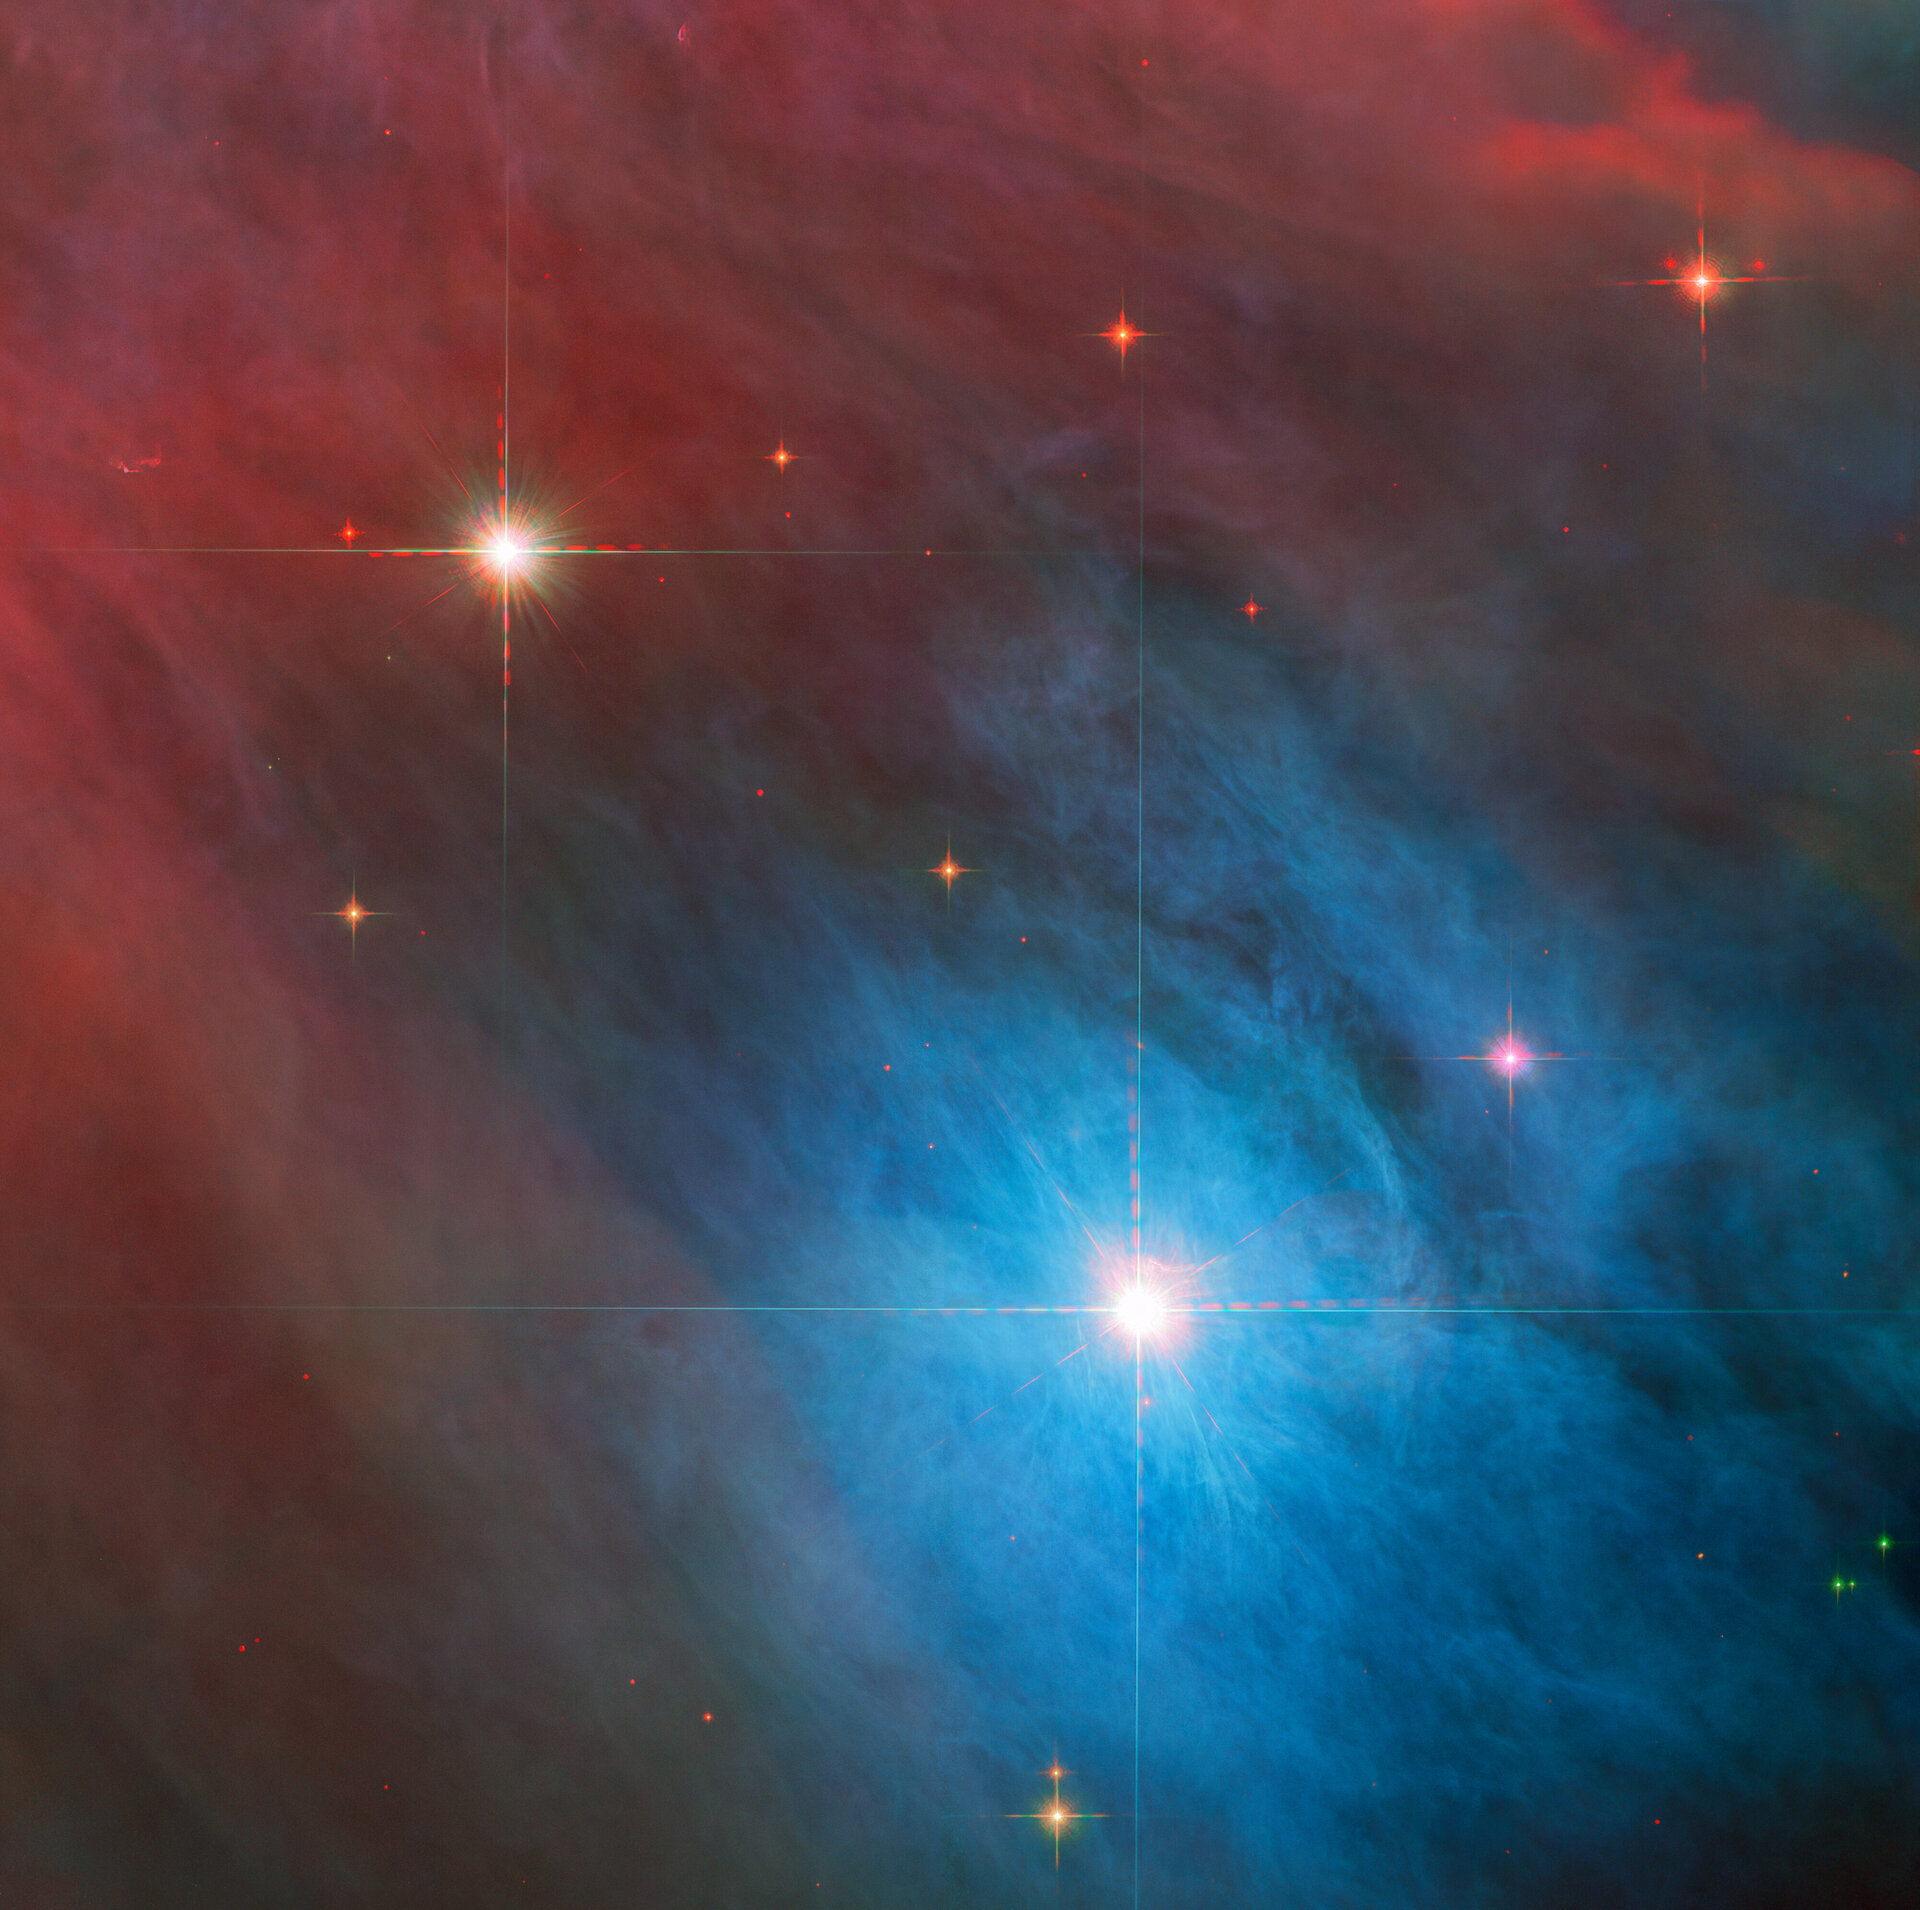 Новое красивое изображение Хаббла показывает горячие молодые переменные звезды в туманности Ориона.